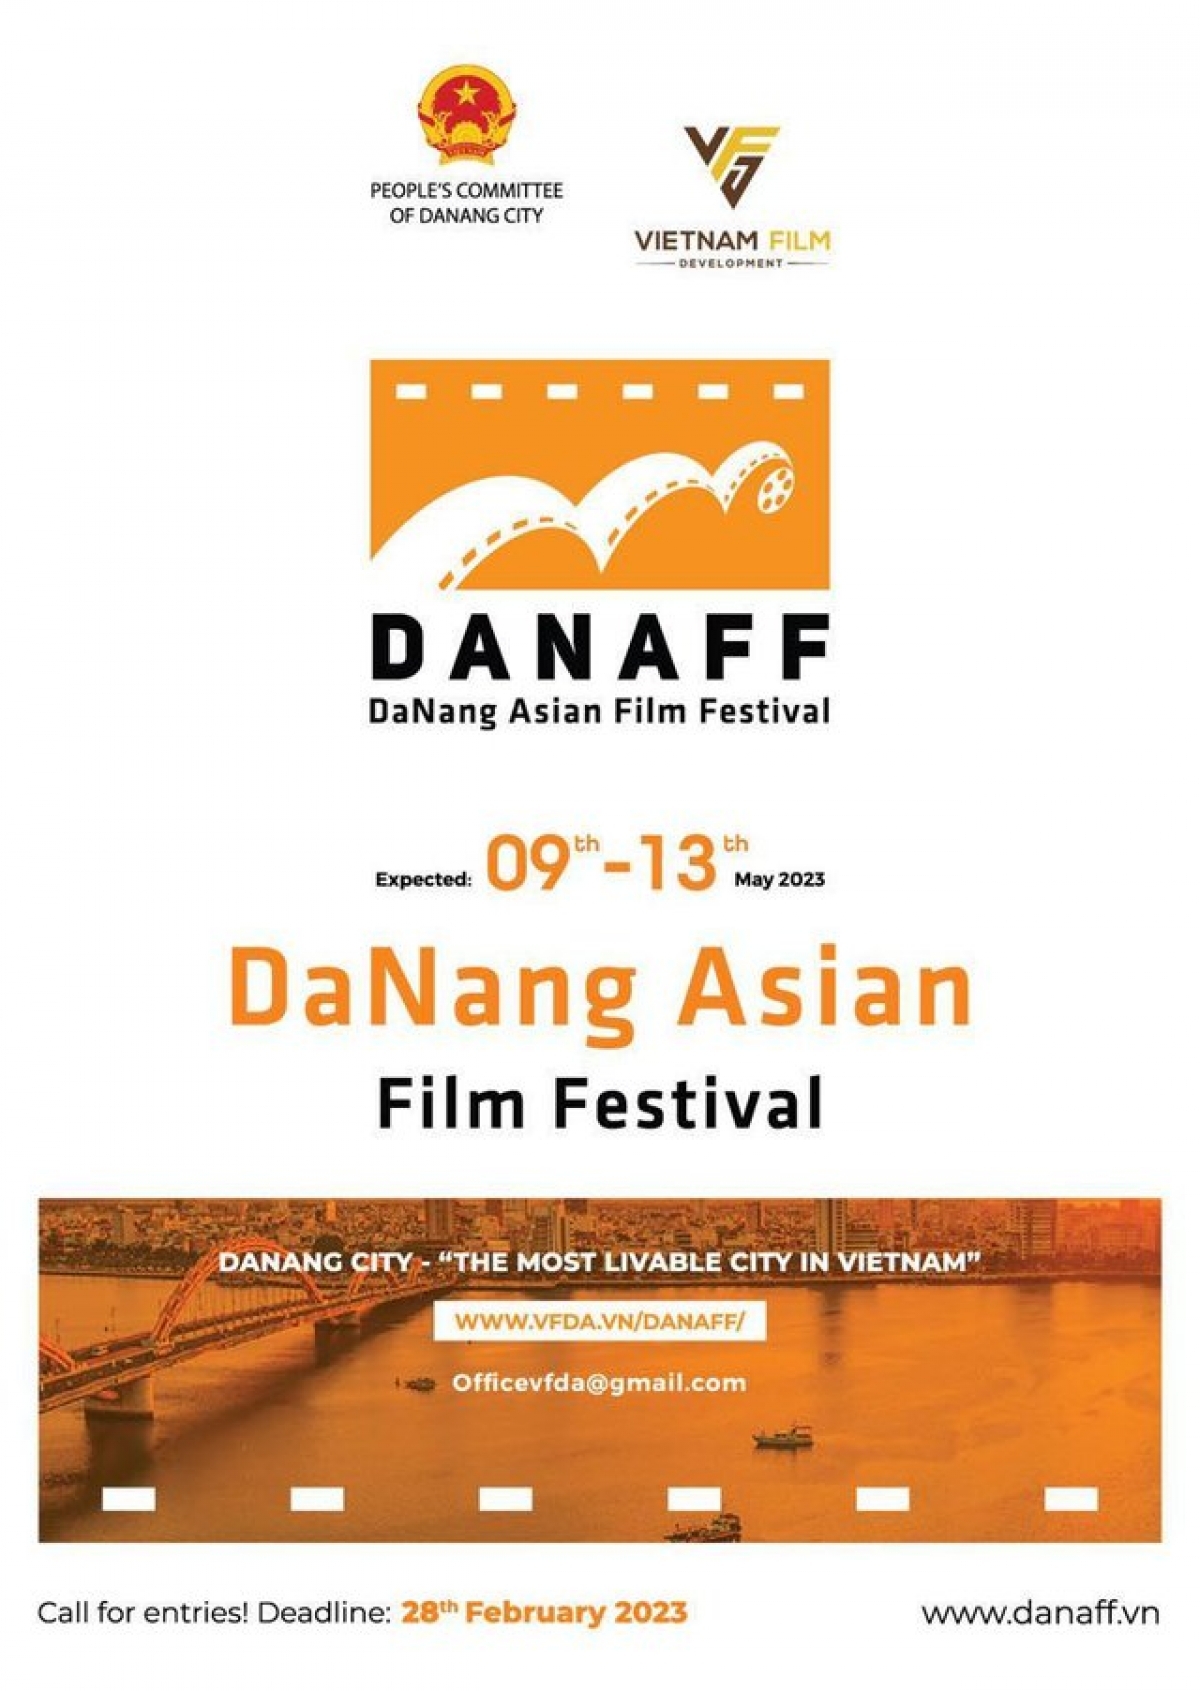 DANAFF I lựa chọn và vinh danh các tác phẩm điện ảnh xuất sắc, giàu giá trị nhân văn, có khám phá mới mẻ, nghệ thuật thể hiện độc đáo